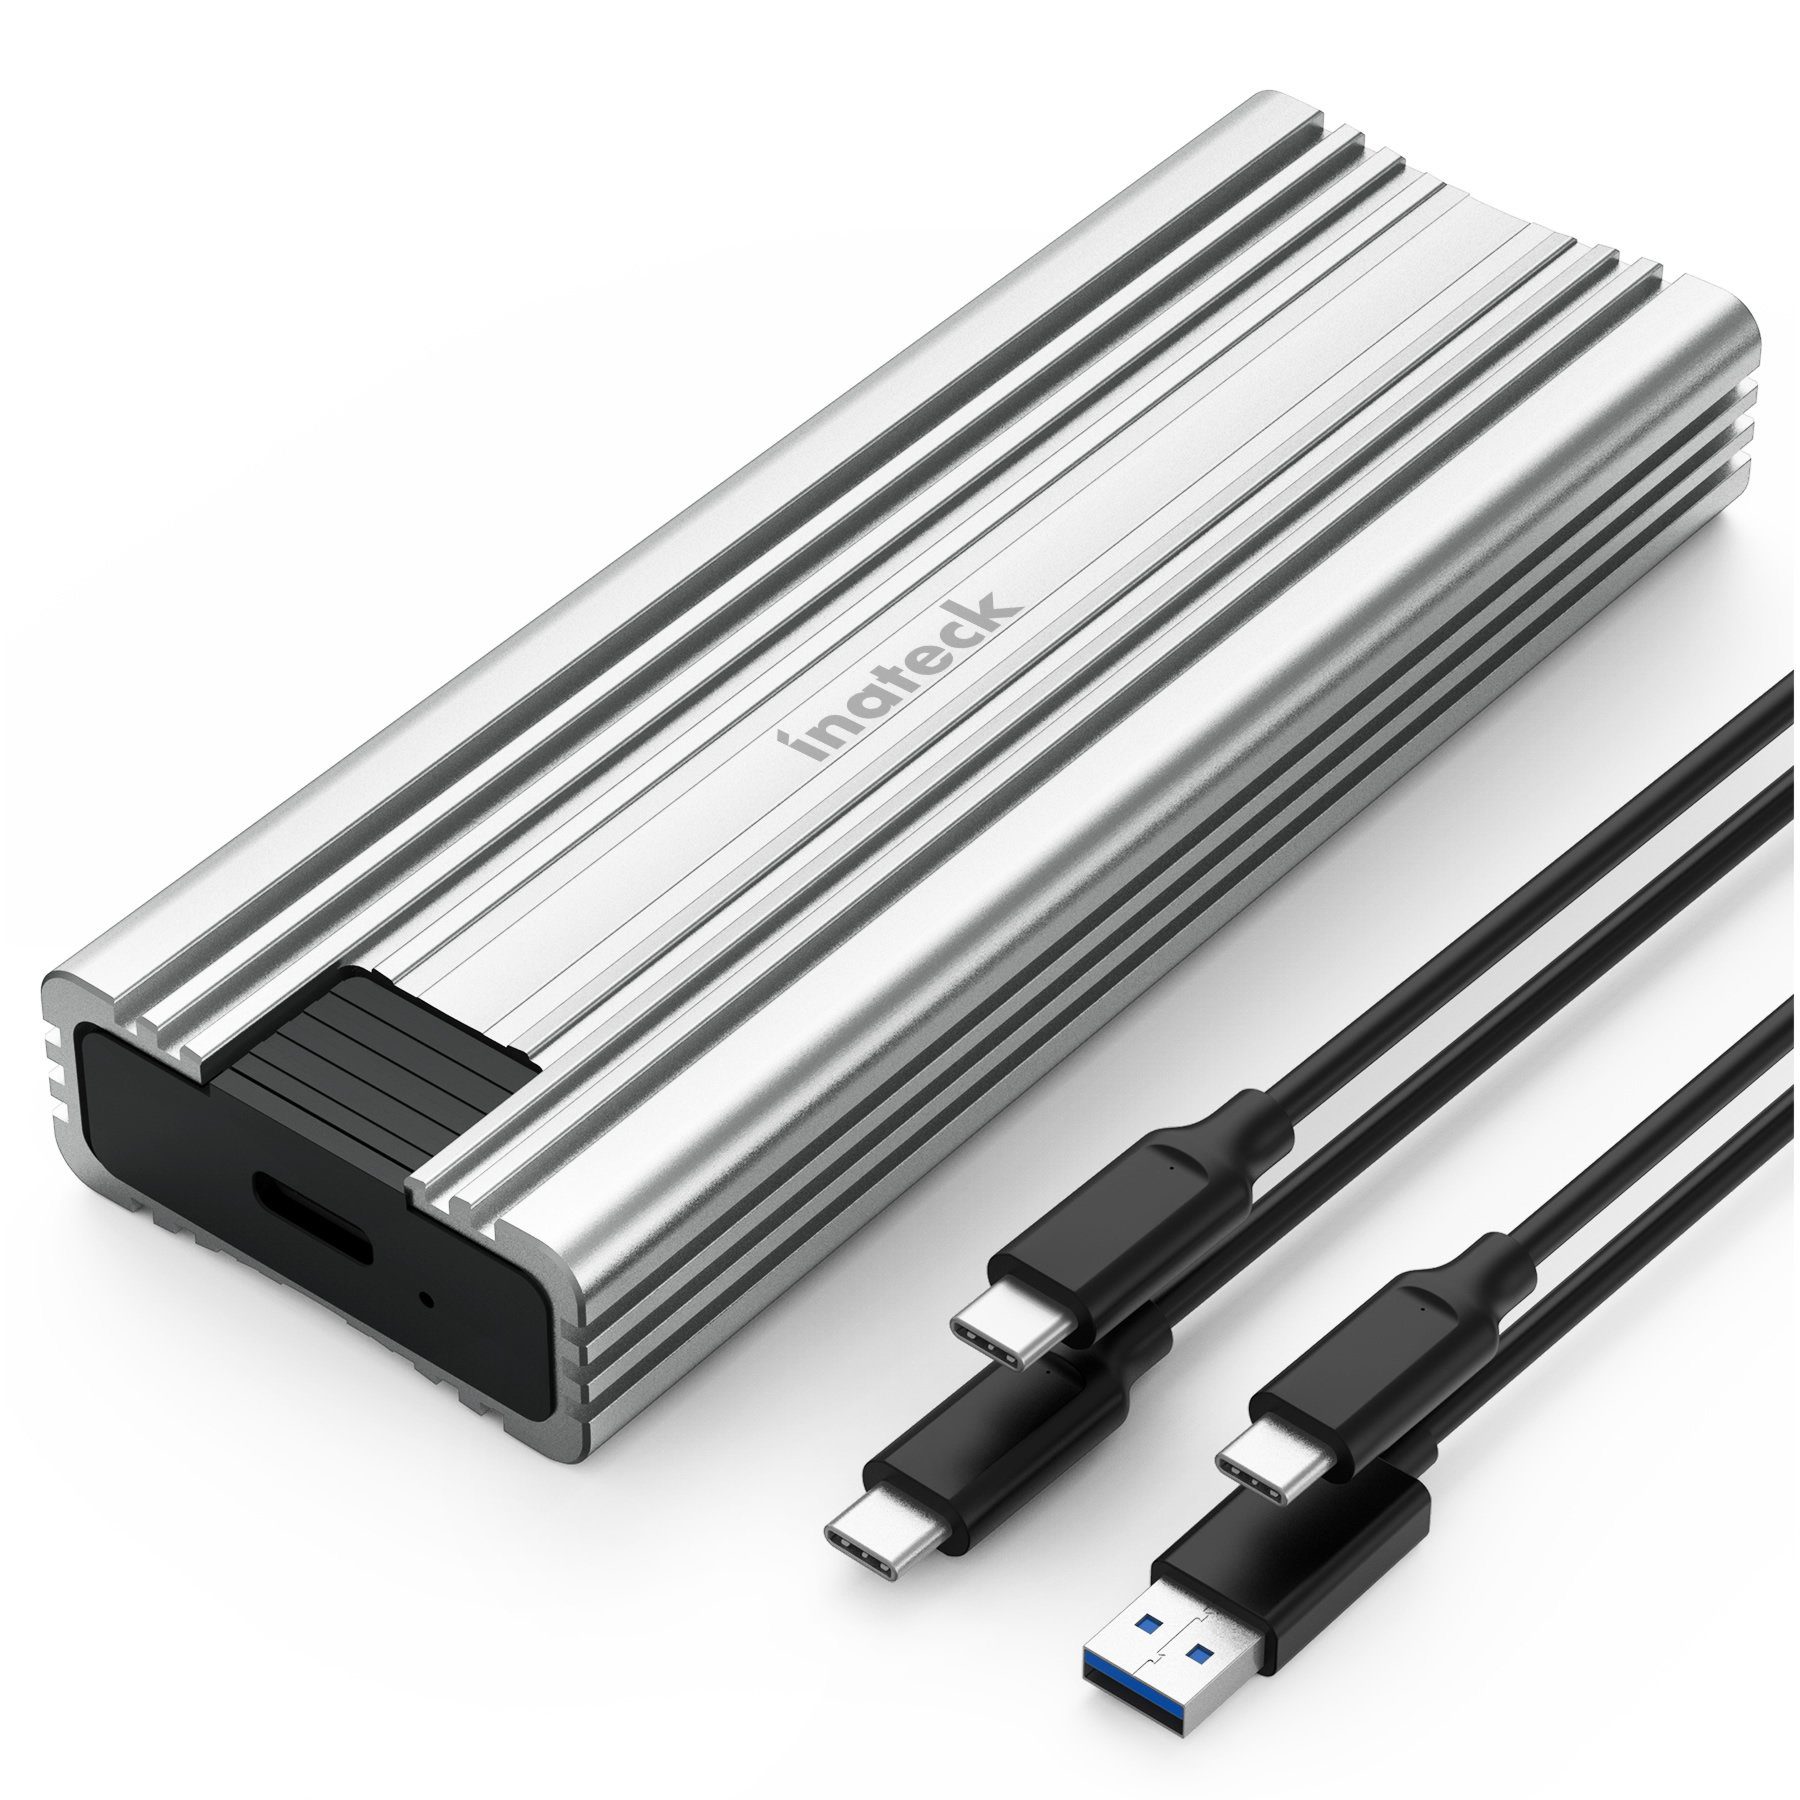 Inateck Festplatten-Gehäuse NVMe M.2 Festplattengehäuse, 10 Gbps, mit USB A zu C und USB C zu C Kabel silber